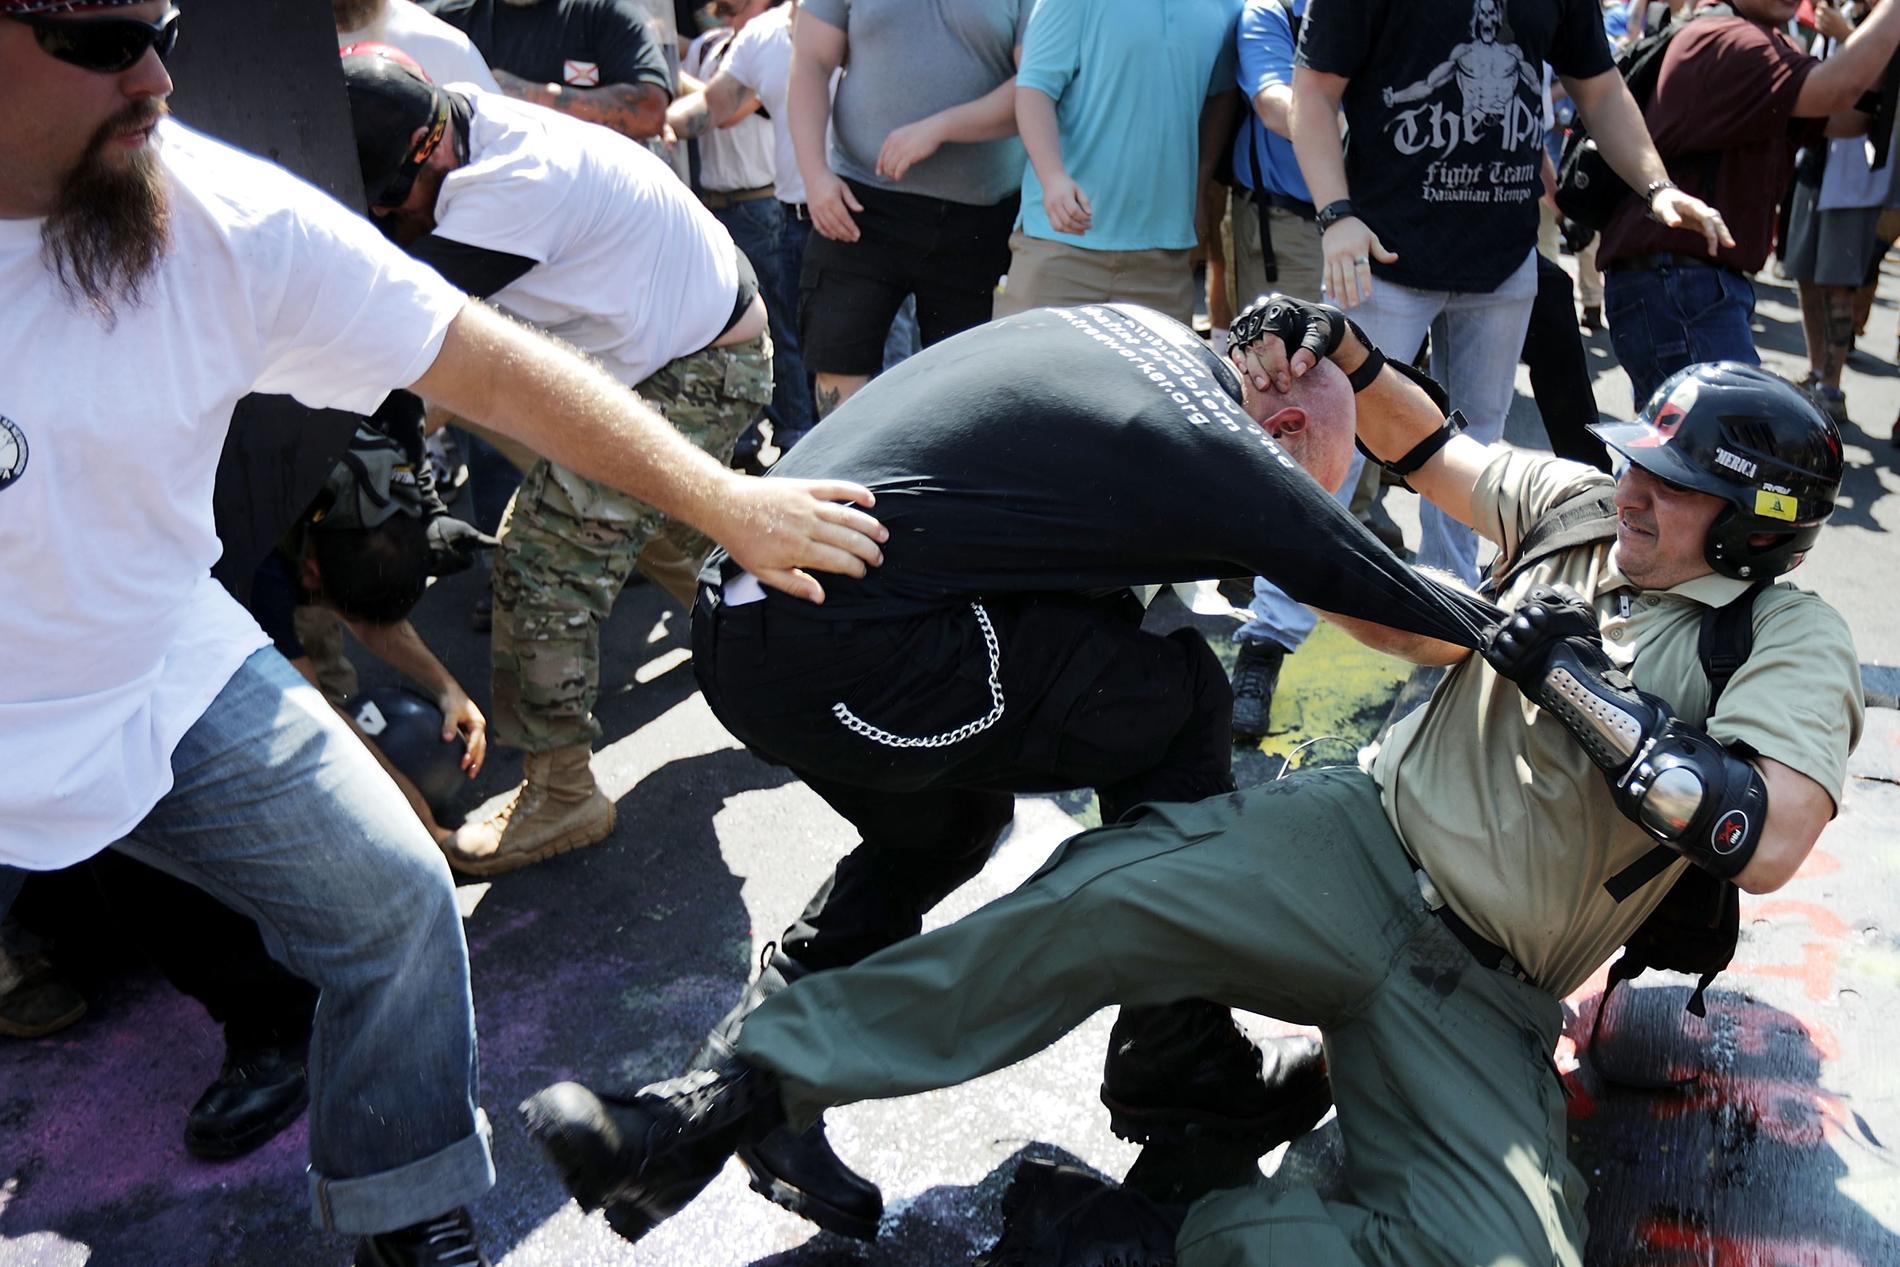  Sammandrabbningar mellan högerextremister och motdemonstranter i Charlottesville, Virginia.